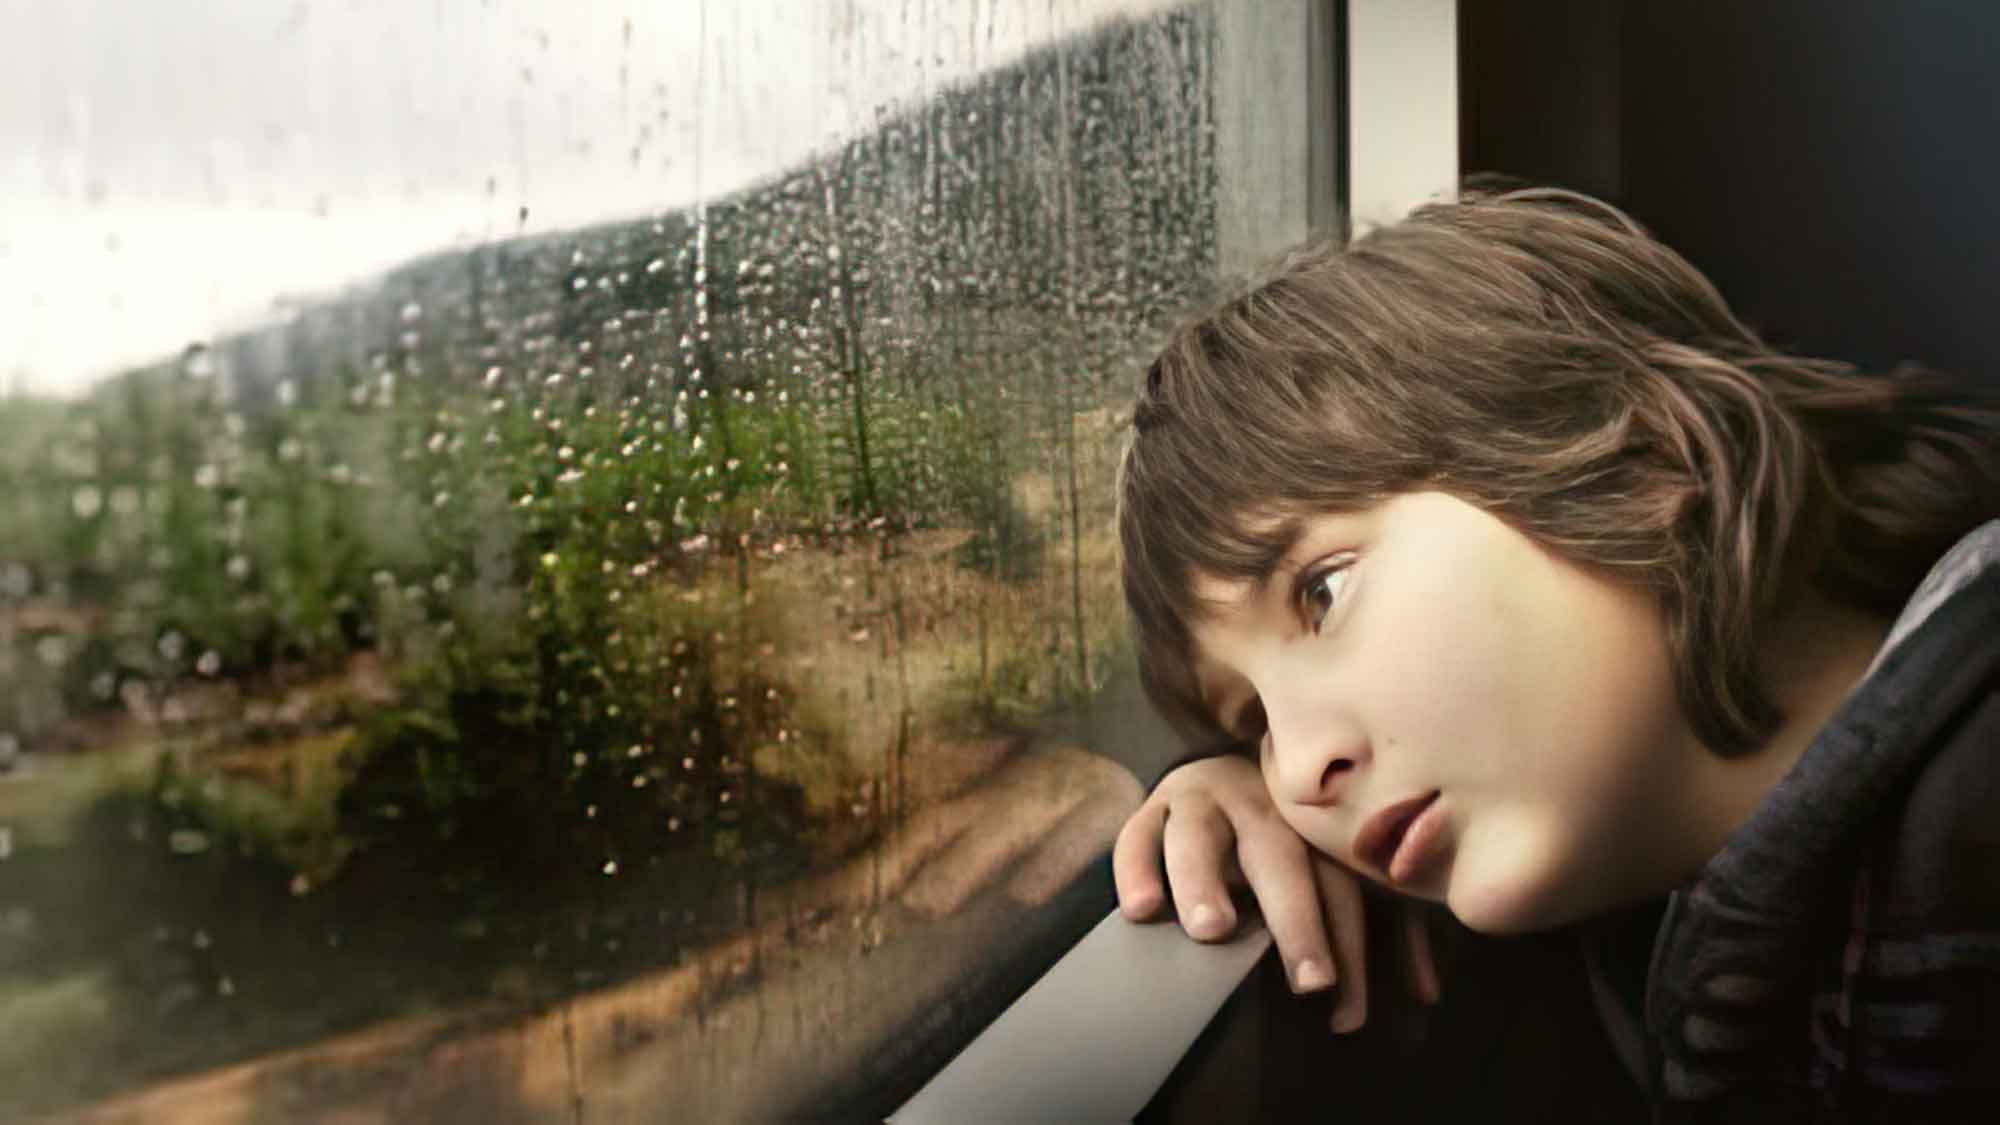 Kinder Depression durch Körper Unzufriedenheit